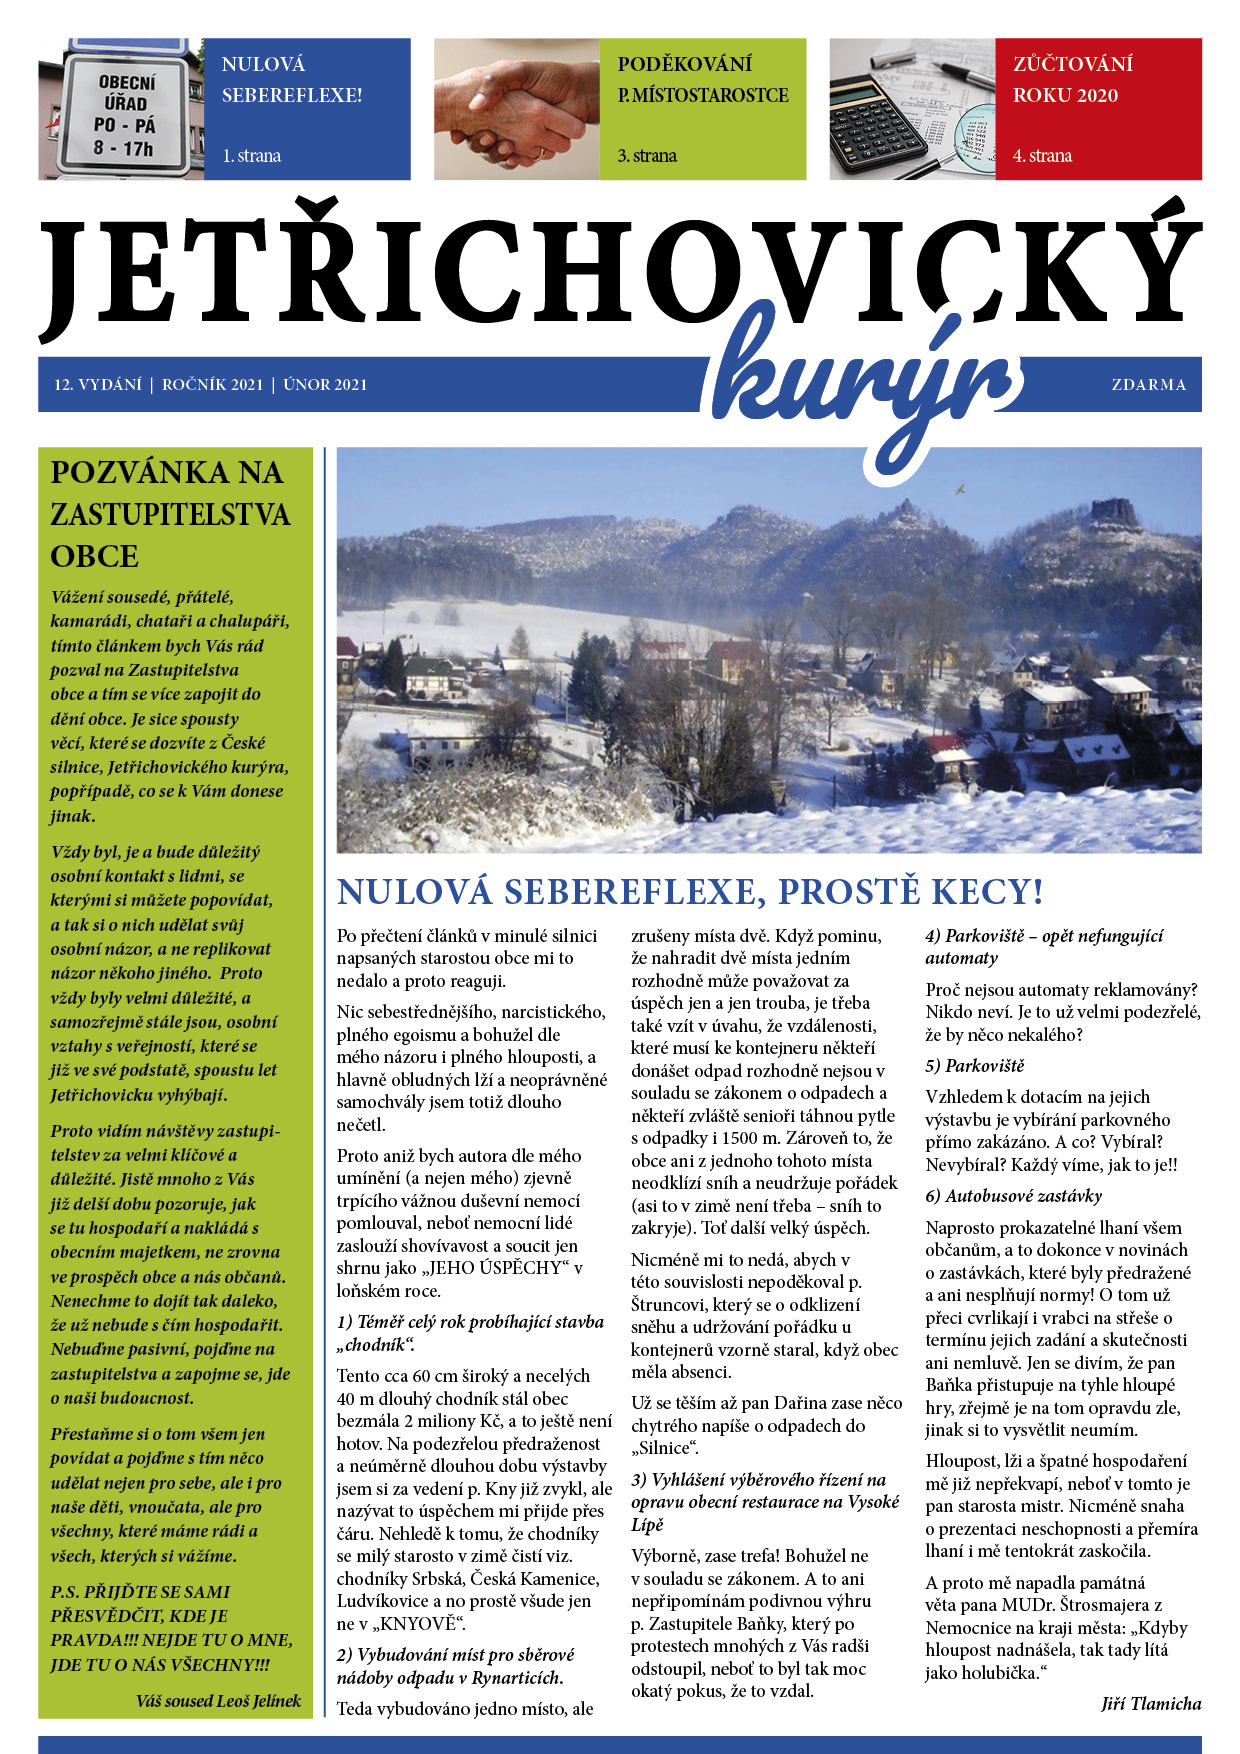 Přečtete si více ze článku Jetřichovický kurýr 01/2021